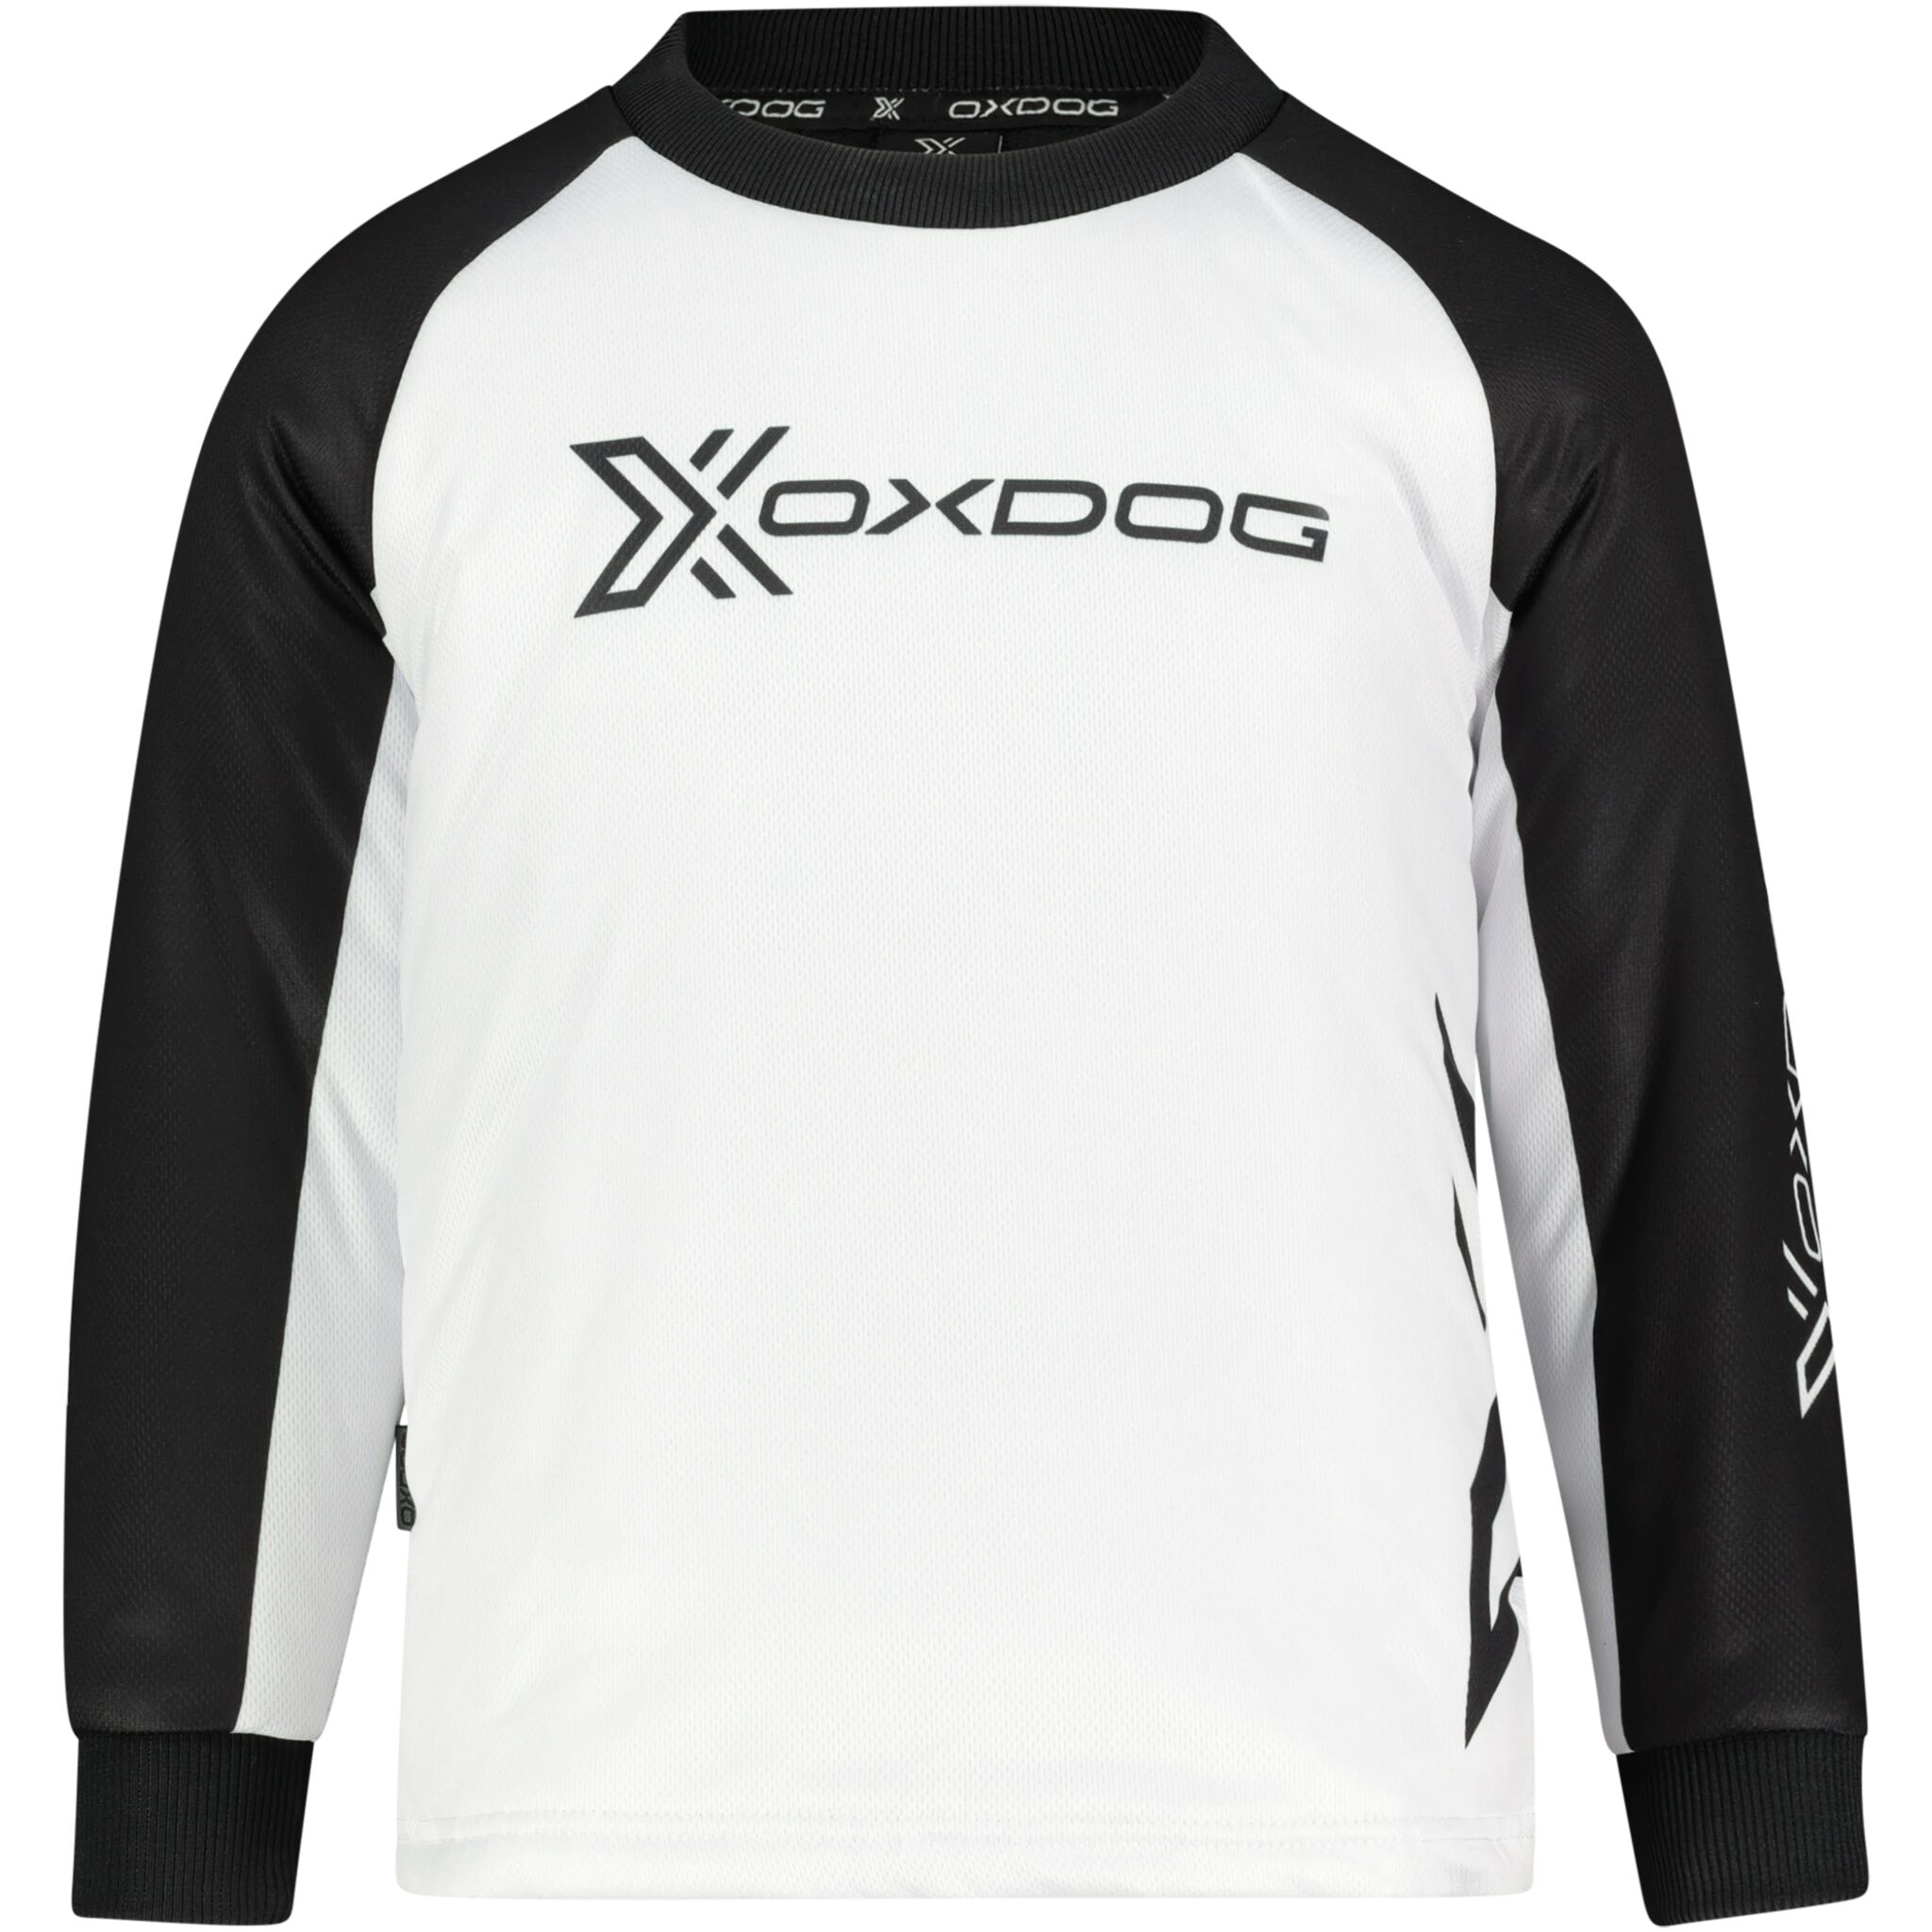 Oxdog Xguard Goalie Shirt, treningstrøye junior 130/140 BLACK/WHITE